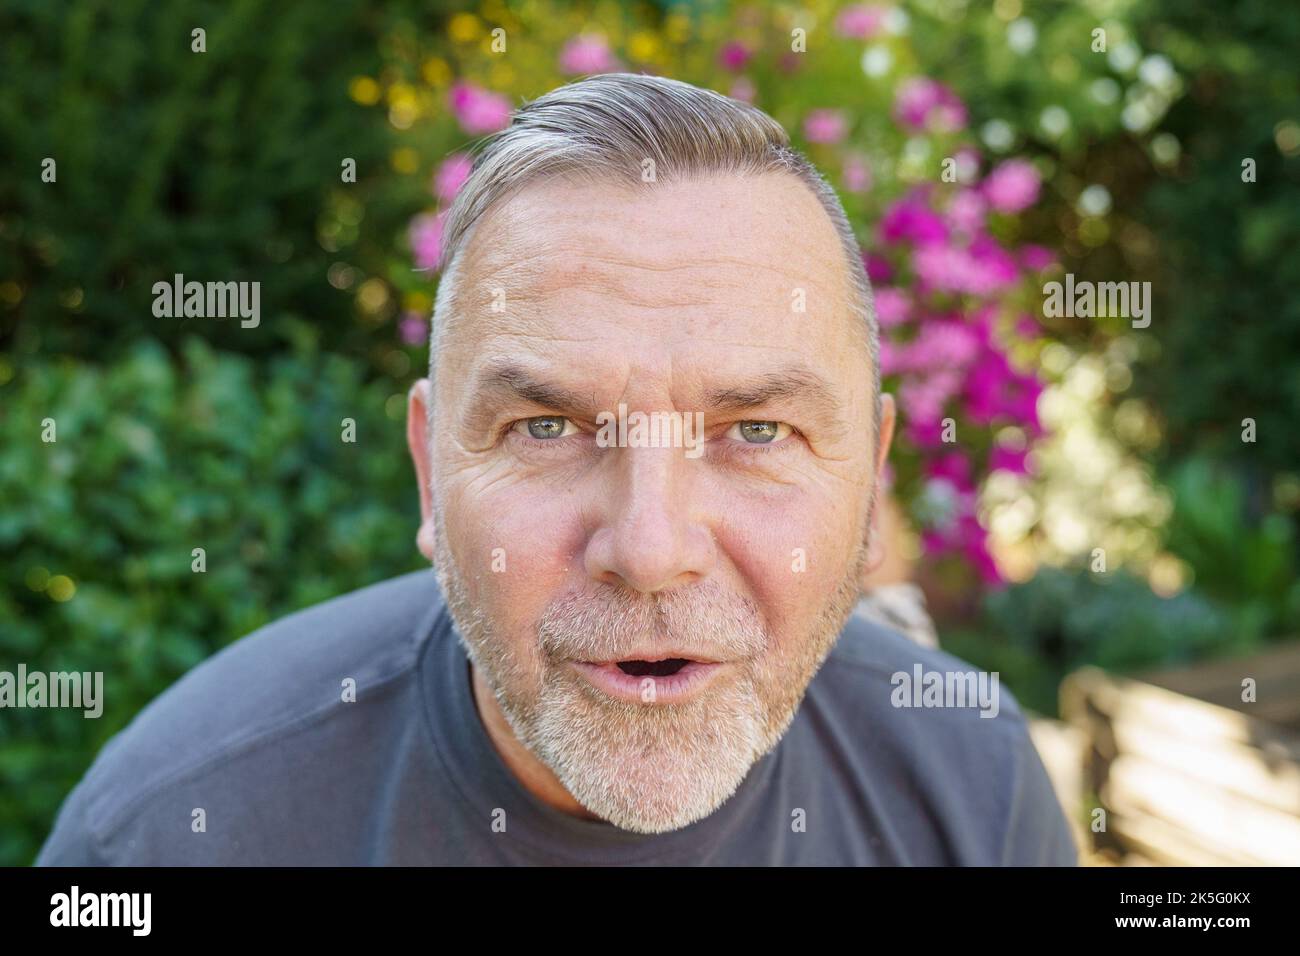 Uomo di mezza età che parla fissando con intelligenza la telecamera mentre si inclina in avanti con un'espressione seria Foto Stock